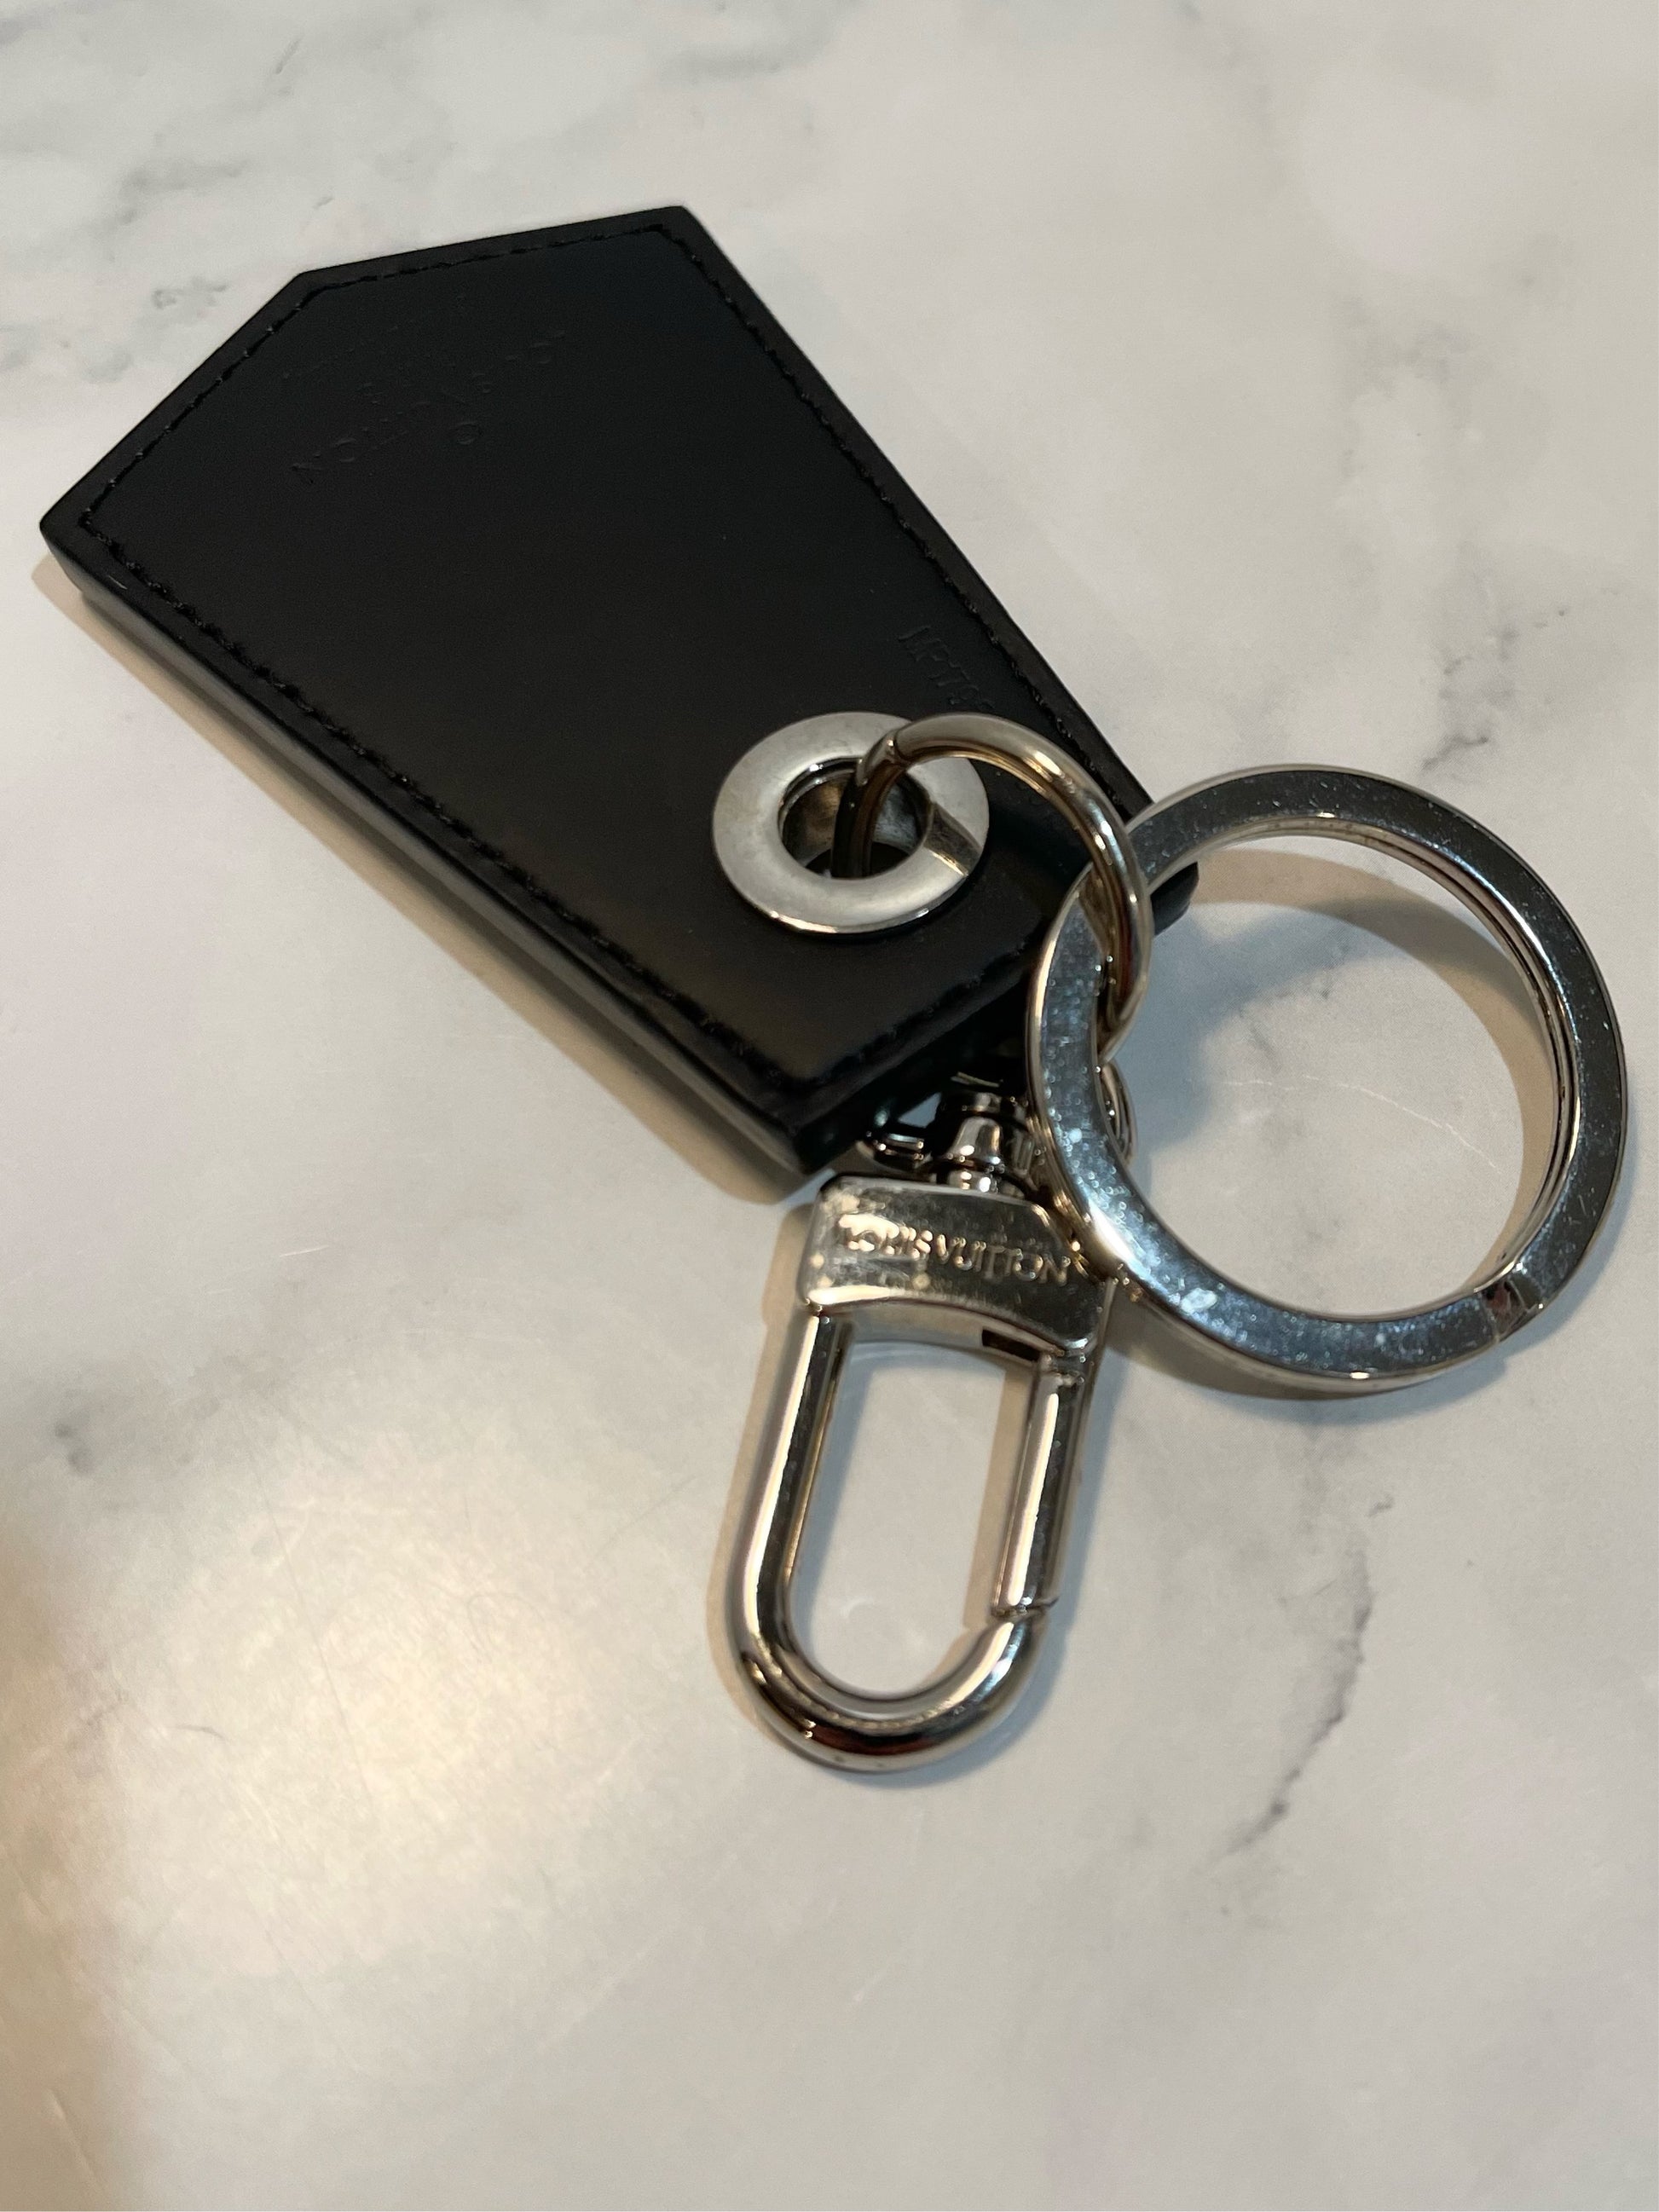 Shop Louis Vuitton MONOGRAM Enchappe key holder (MP1795) by